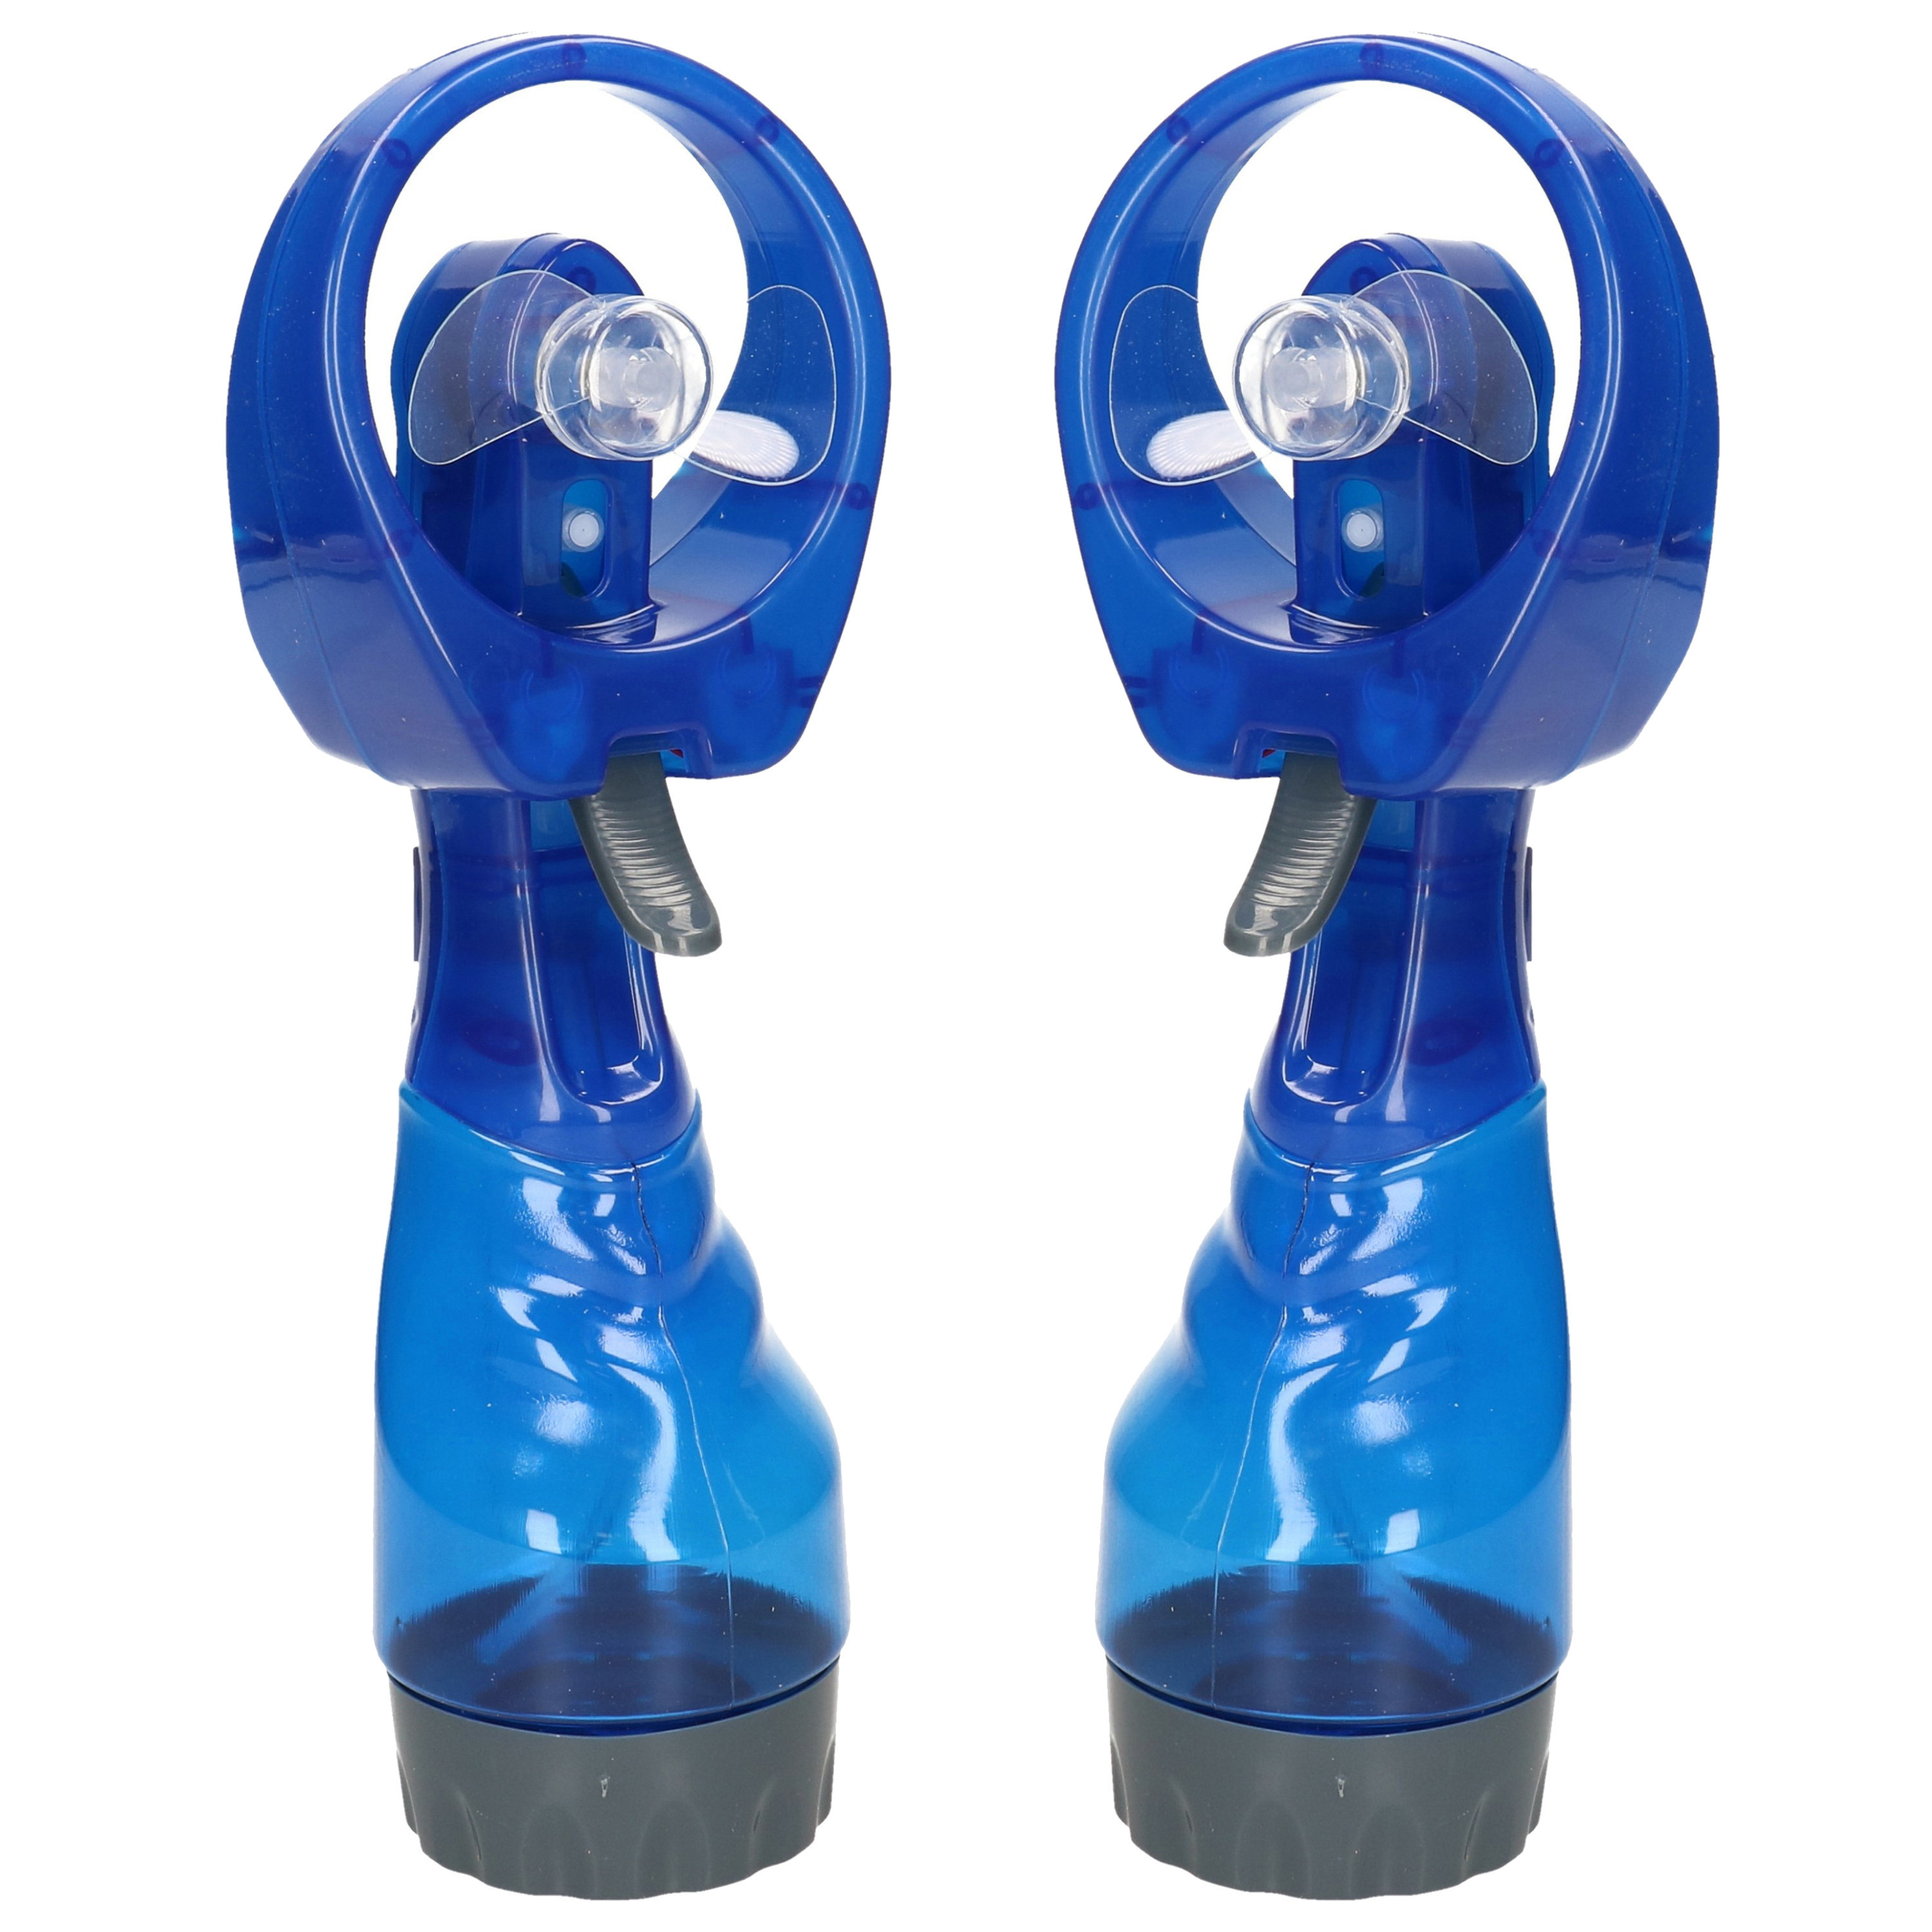 Gerimport waterspray ventilator 2x stuks -blauw 27 cm voor verkoeling in de zomer